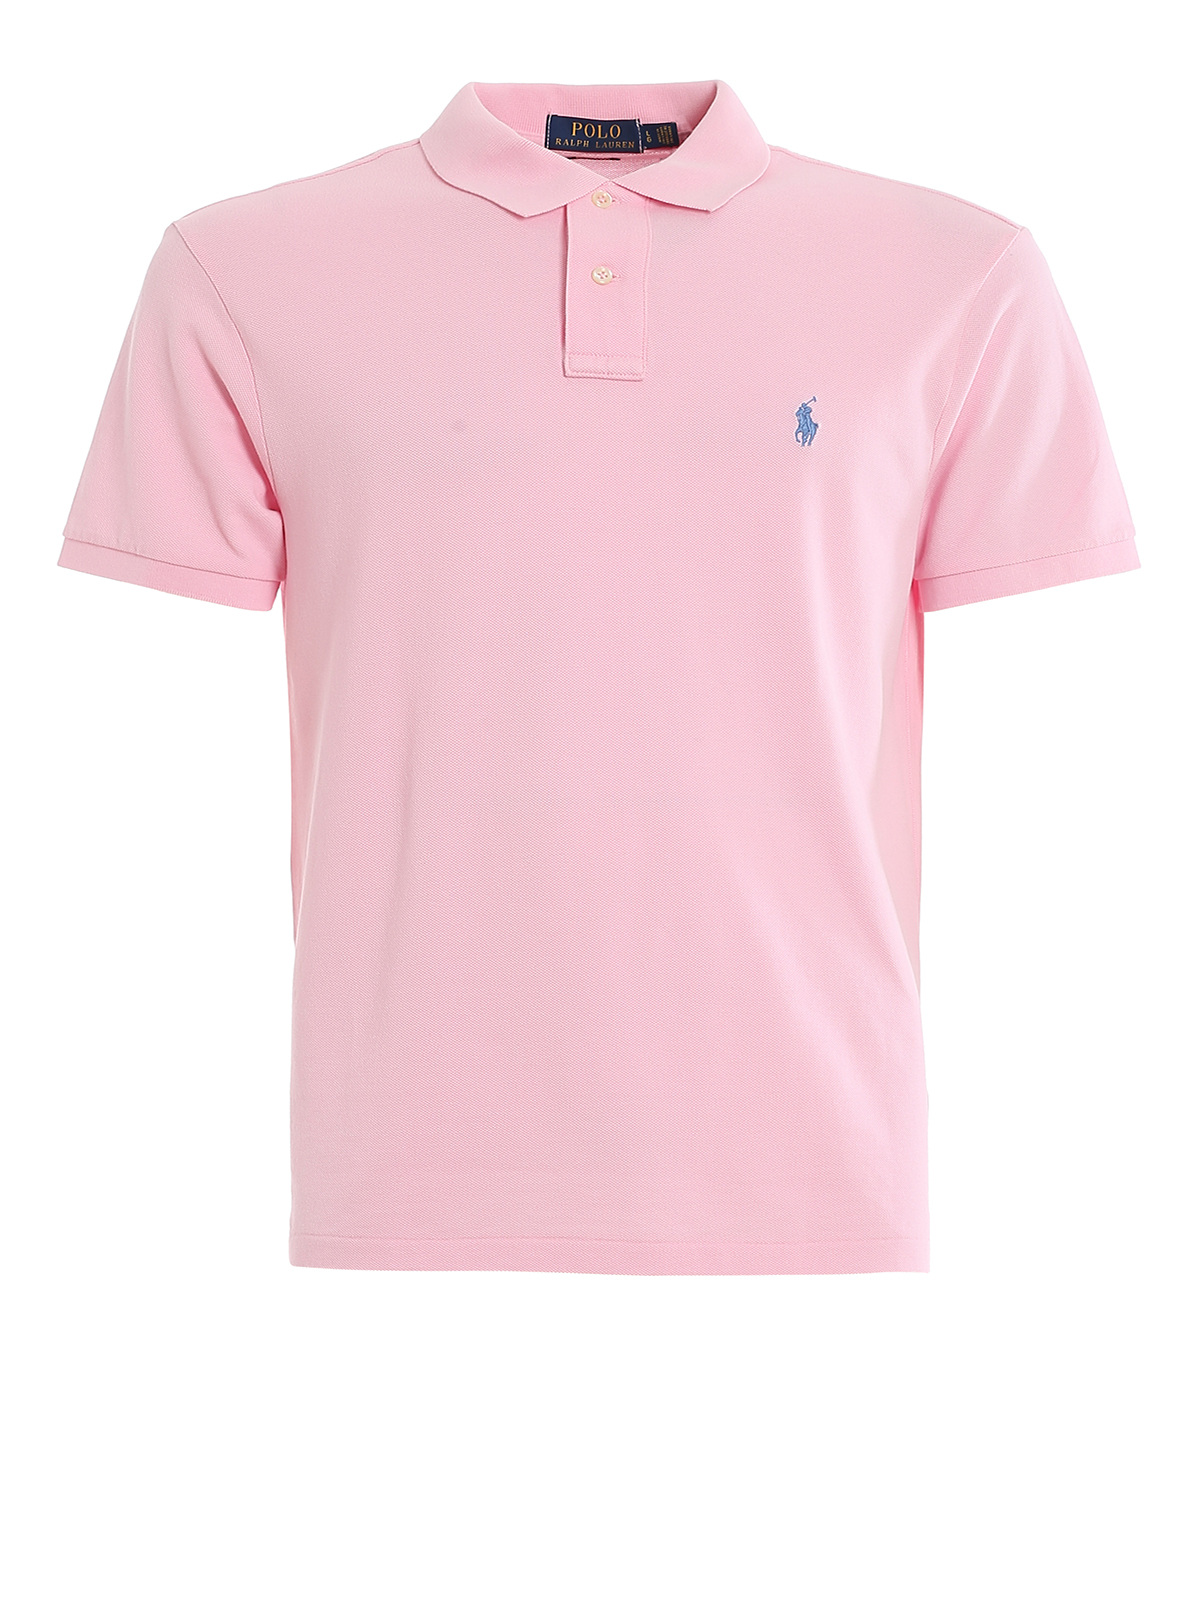 Polo Ralph Lauren Antique Pink Pique Cotton Polo Shirt